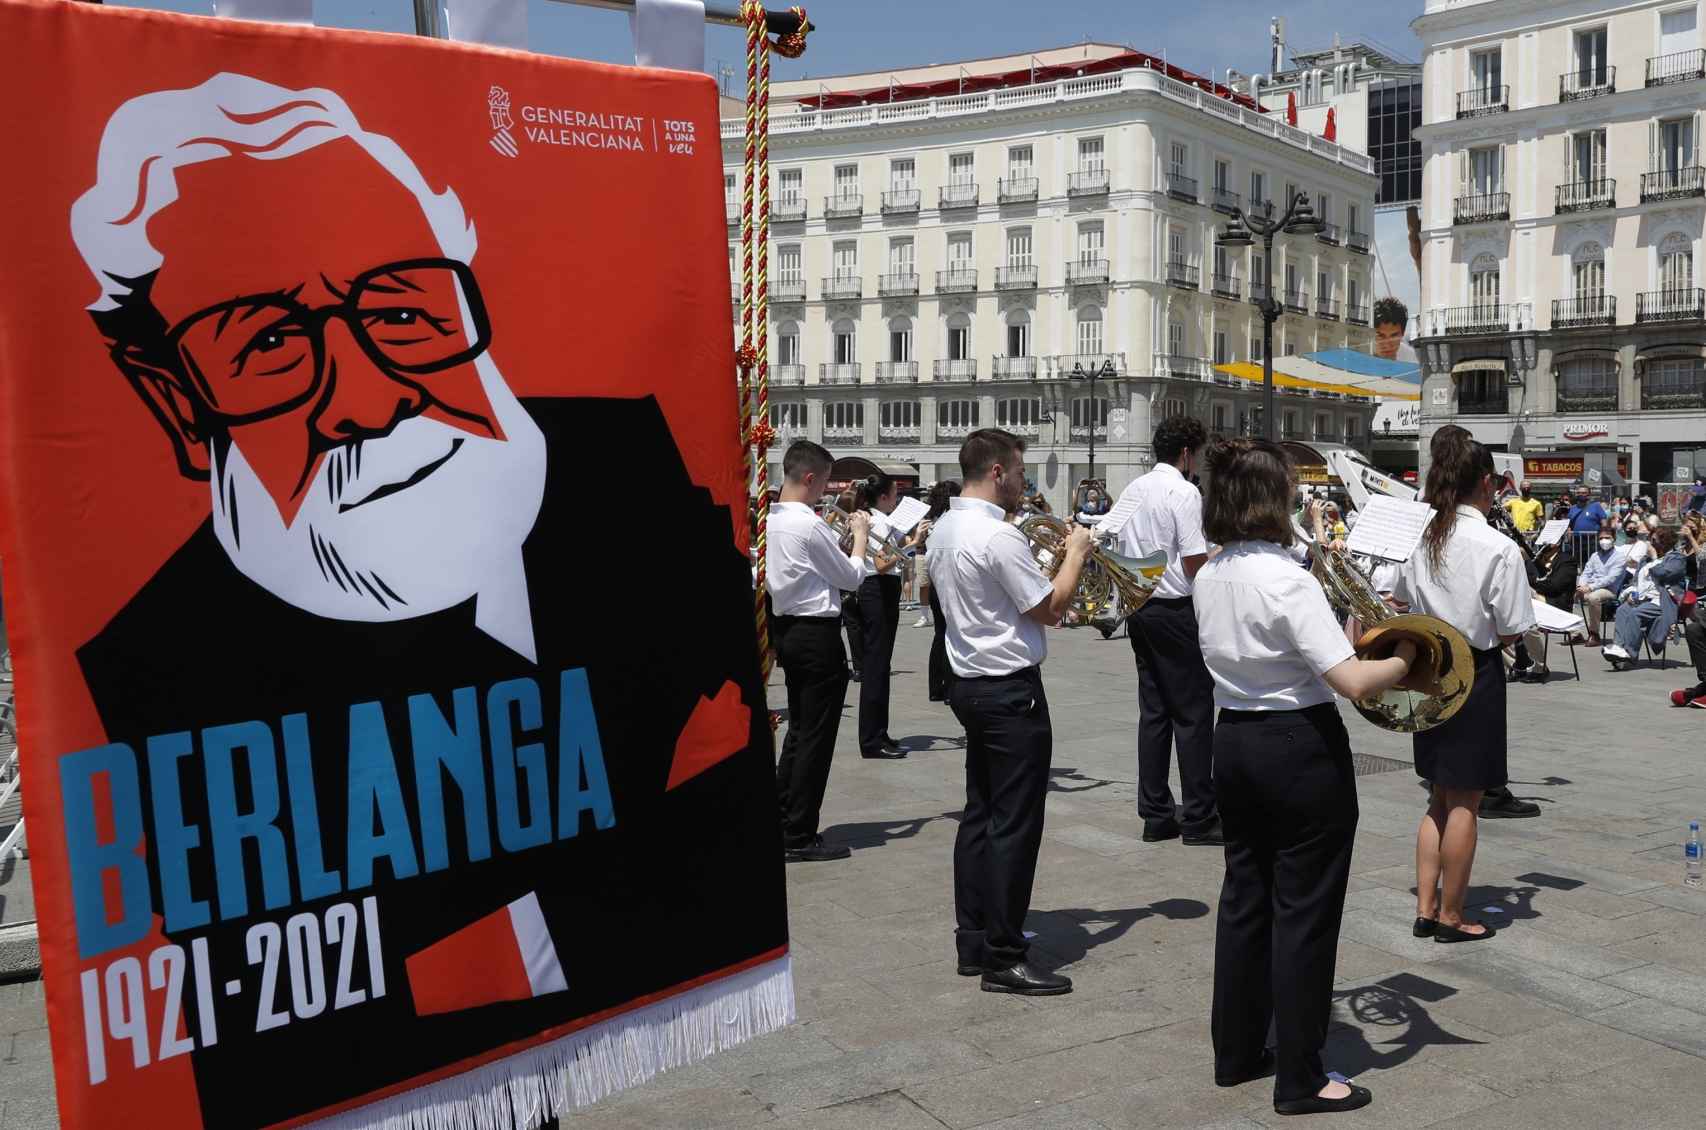 Este sábado 12 de junio, Luis García Berlanga cumpliría cien años.